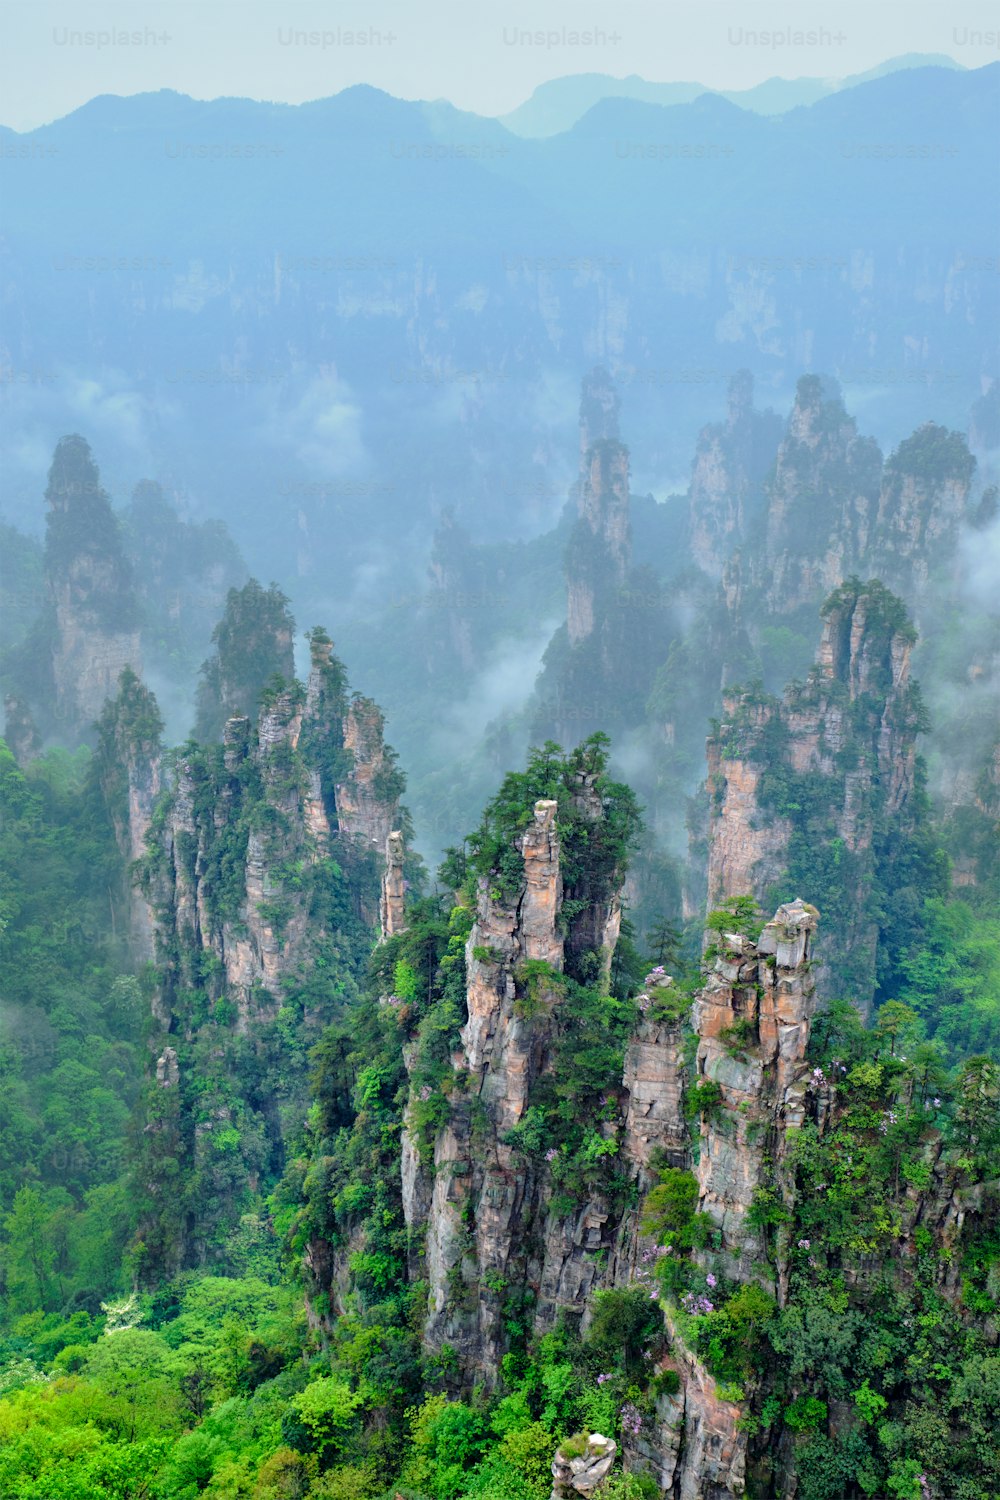 Famosa atração turística de China - Zhangjiajie pilares de pedra montanhas do penhasco em nuvens de neblina em Wulingyuan, Hunan, China